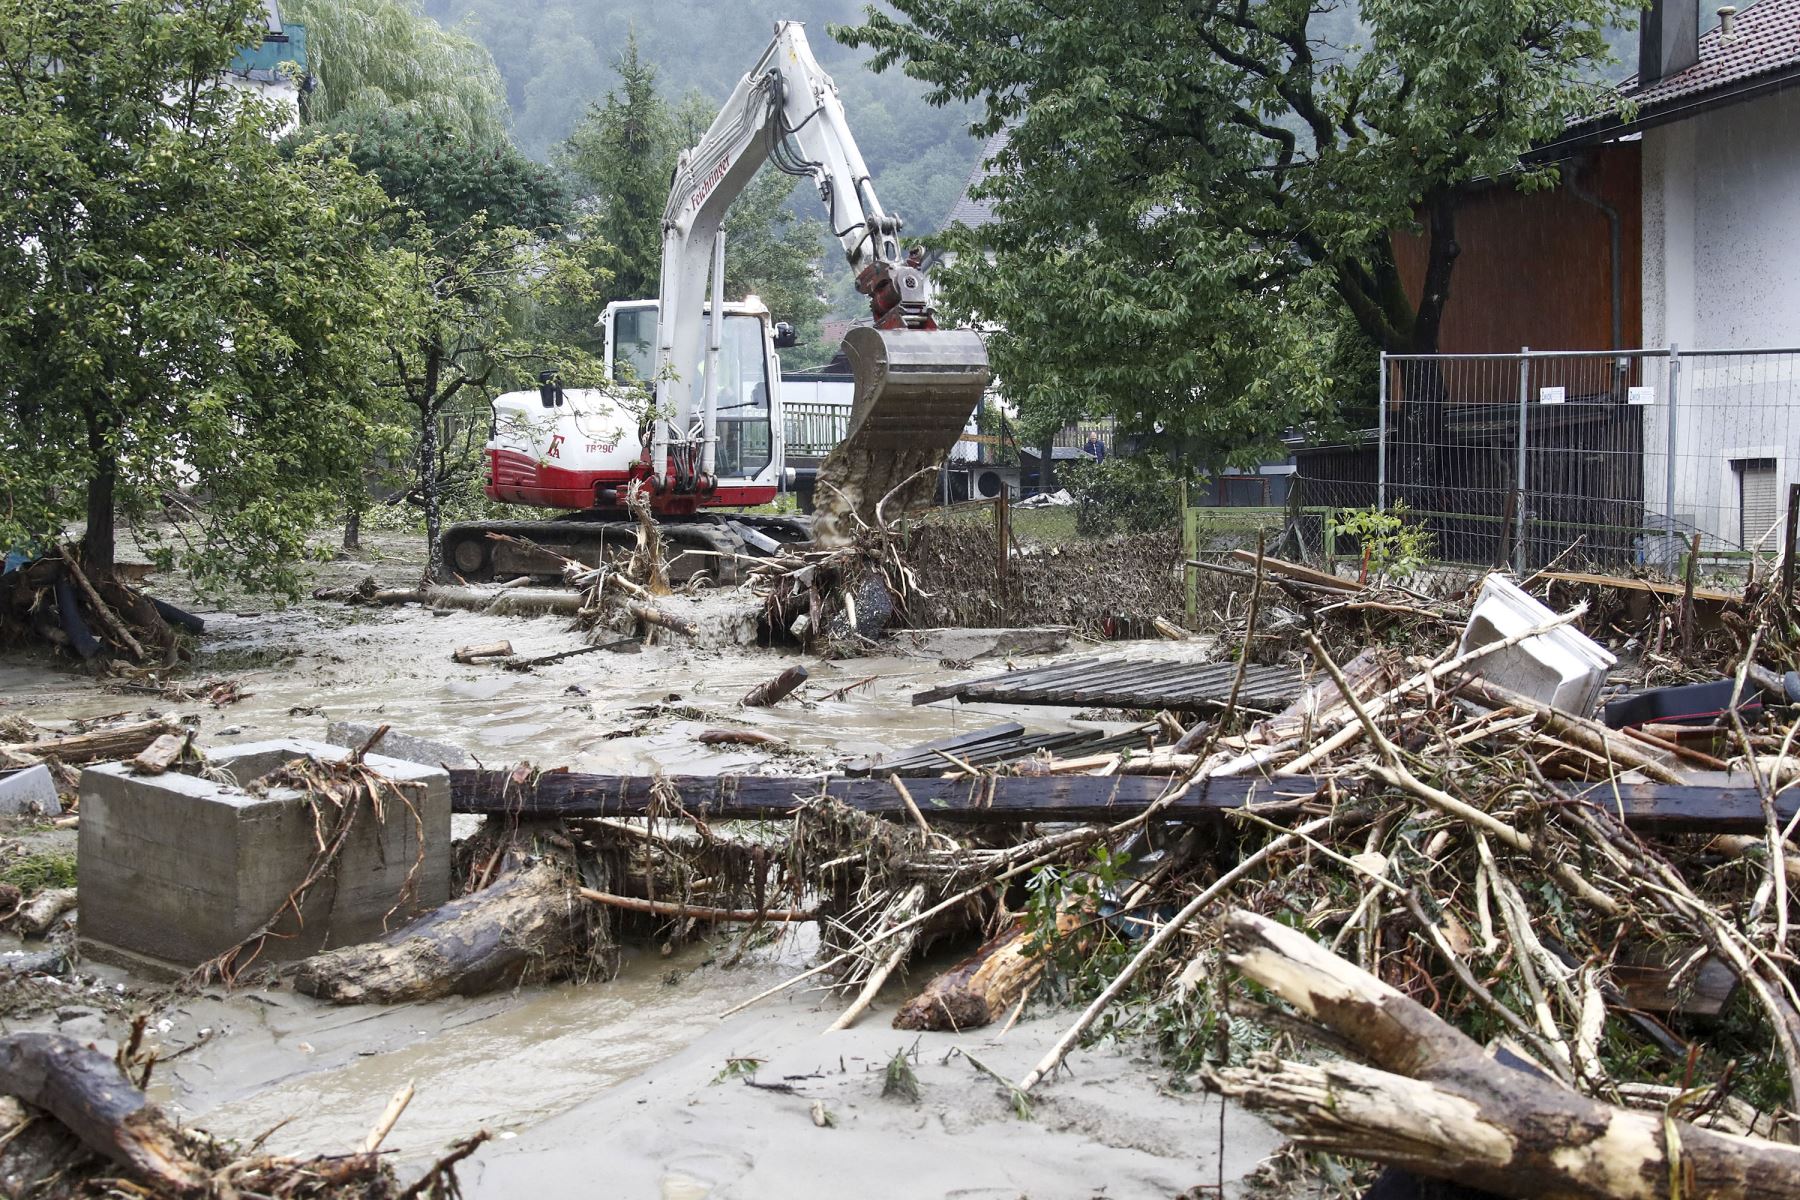 Una excavadora intenta despejar un camino luego de deslizamientos de tierra luego de fuertes lluvias en Treffen, en el distrito de Villach-Land del estado de Carintia, Austria, el 29 de junio de 2022. Foto: AFP